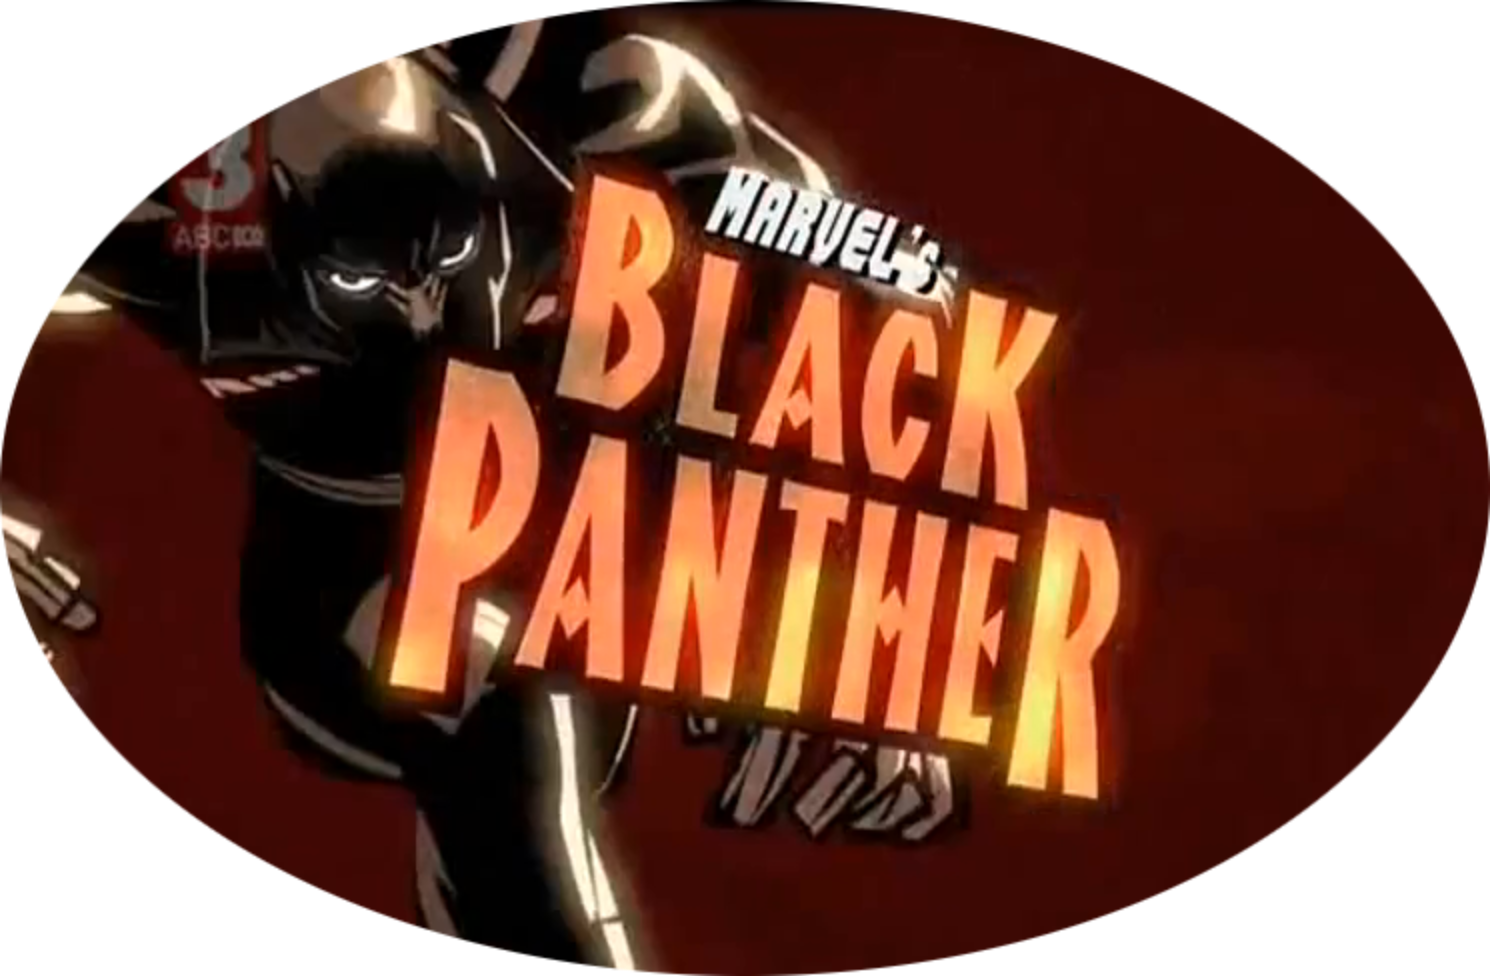 Black Panther Complete (1 DVD Box Set), BackToThe80sDVDs